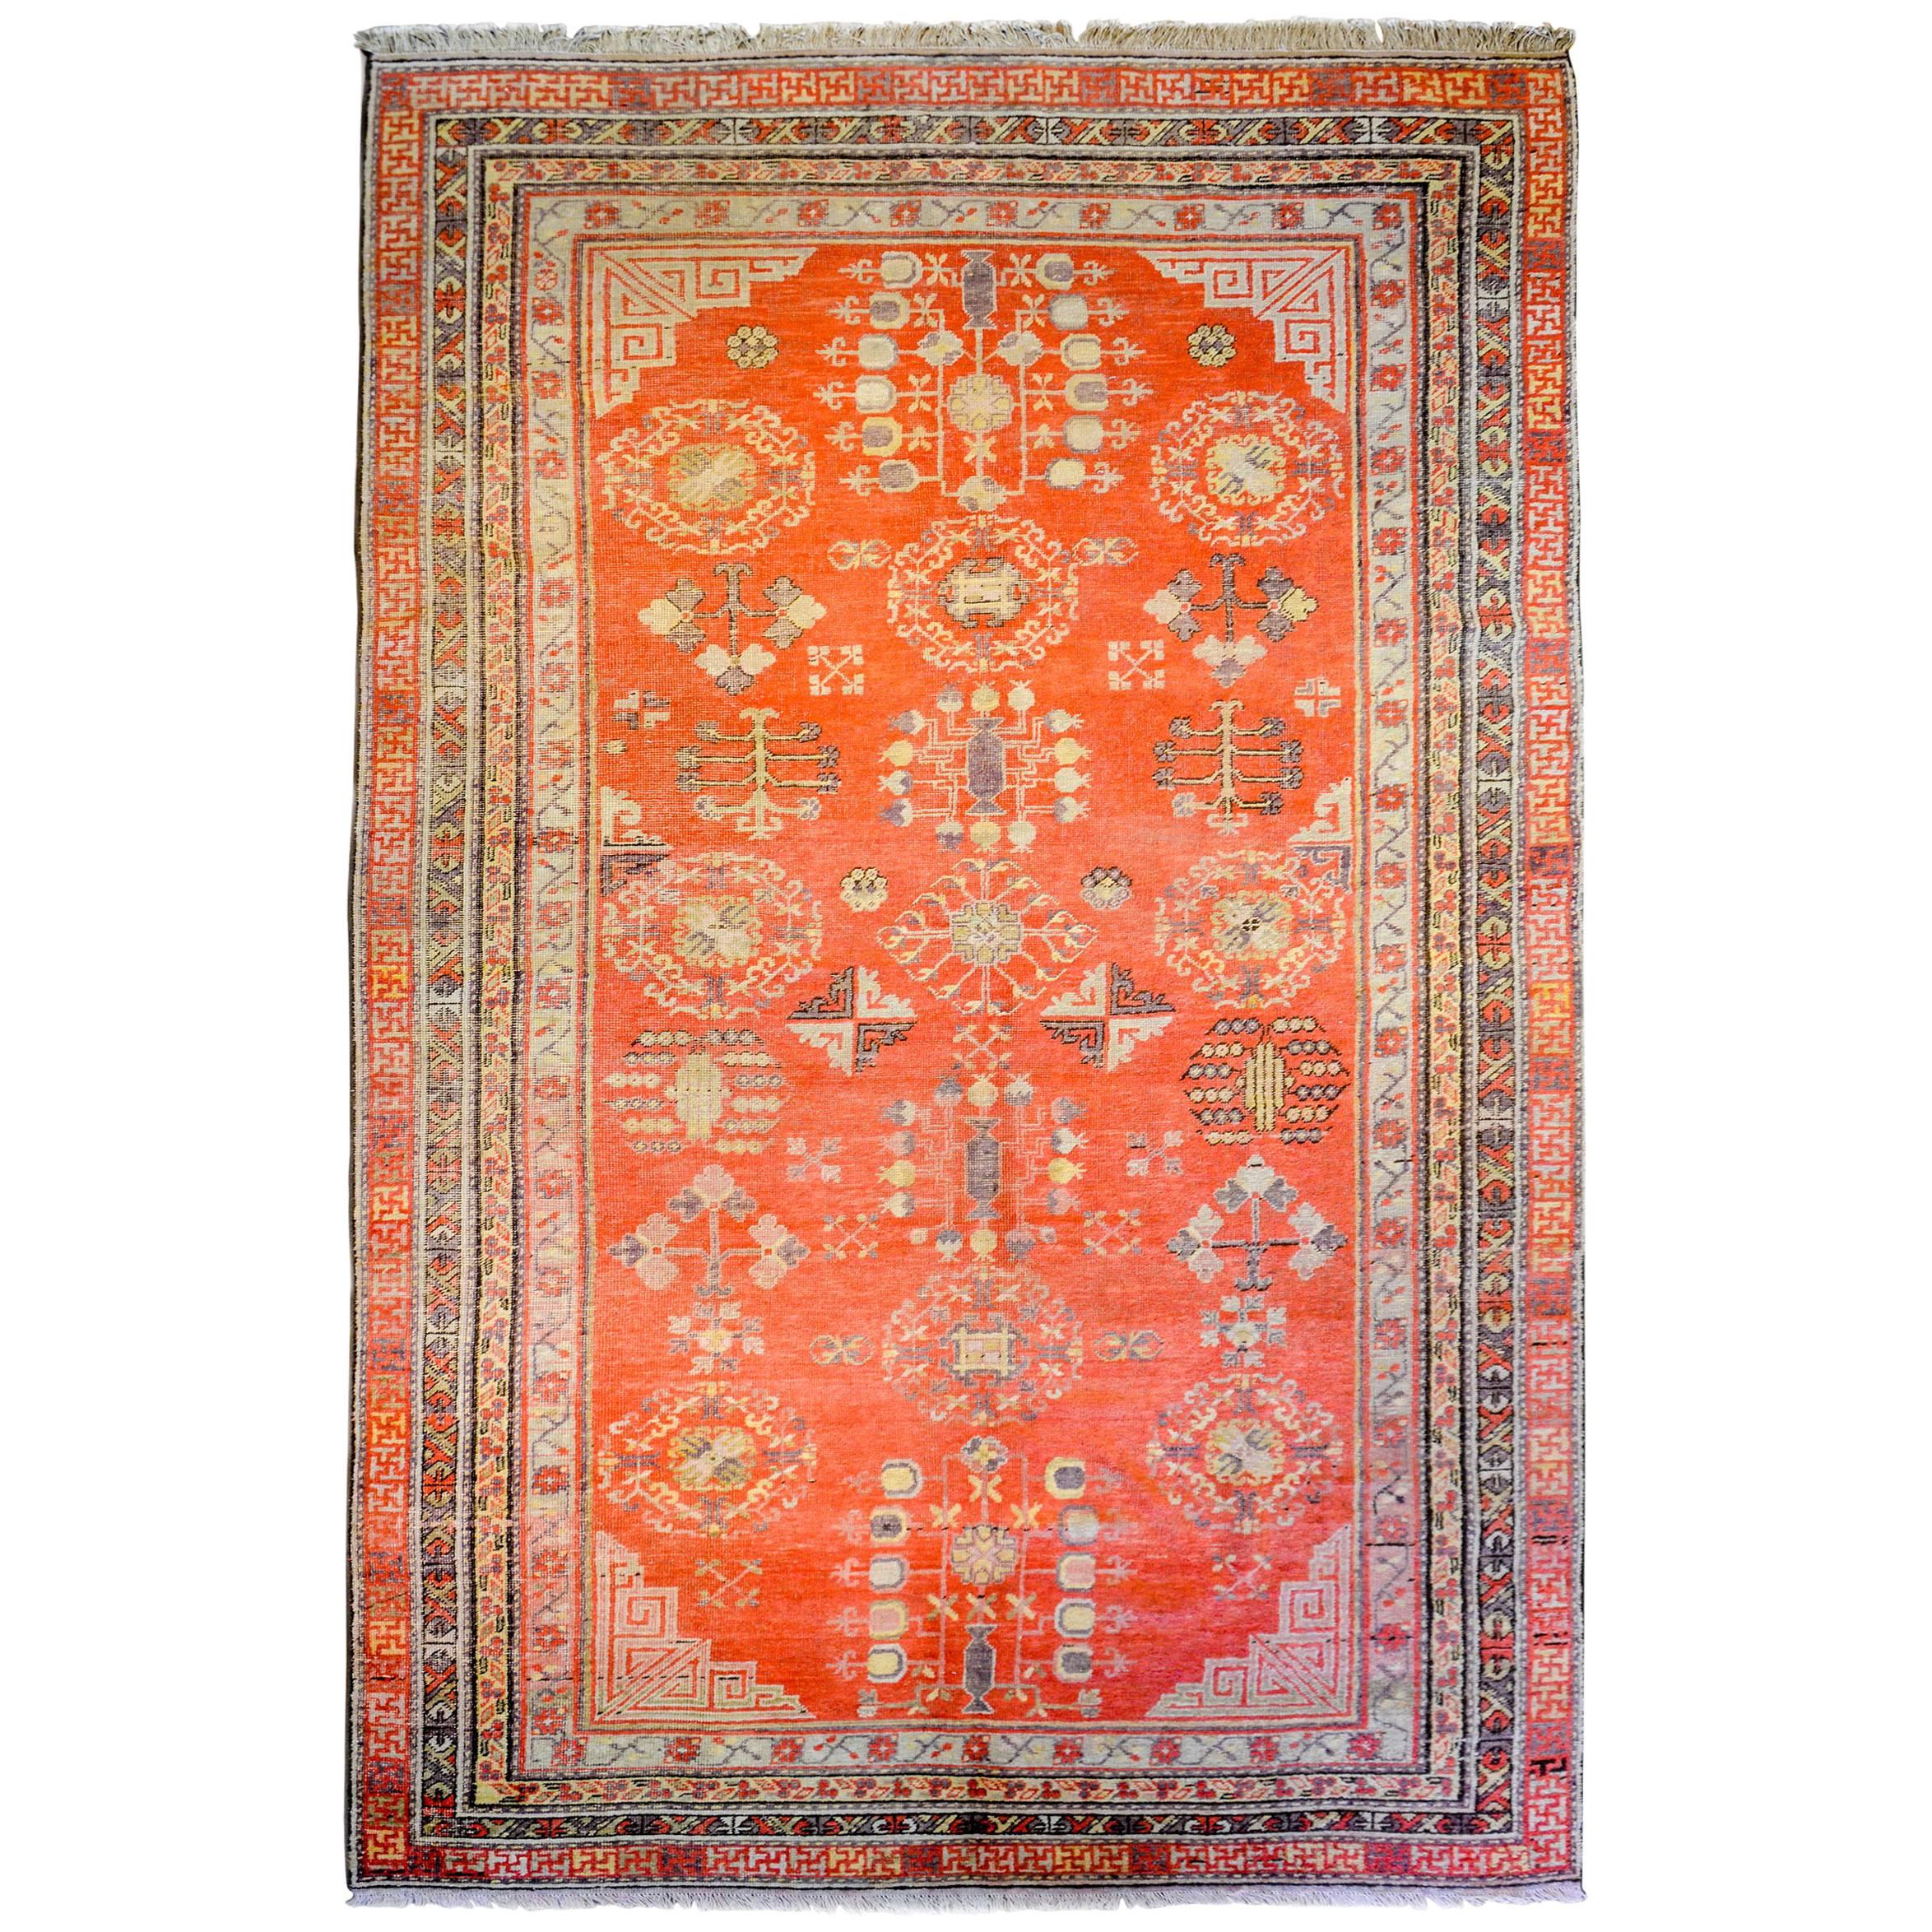 Außergewöhnlicher Khotan-Teppich aus dem frühen 20. Jahrhundert